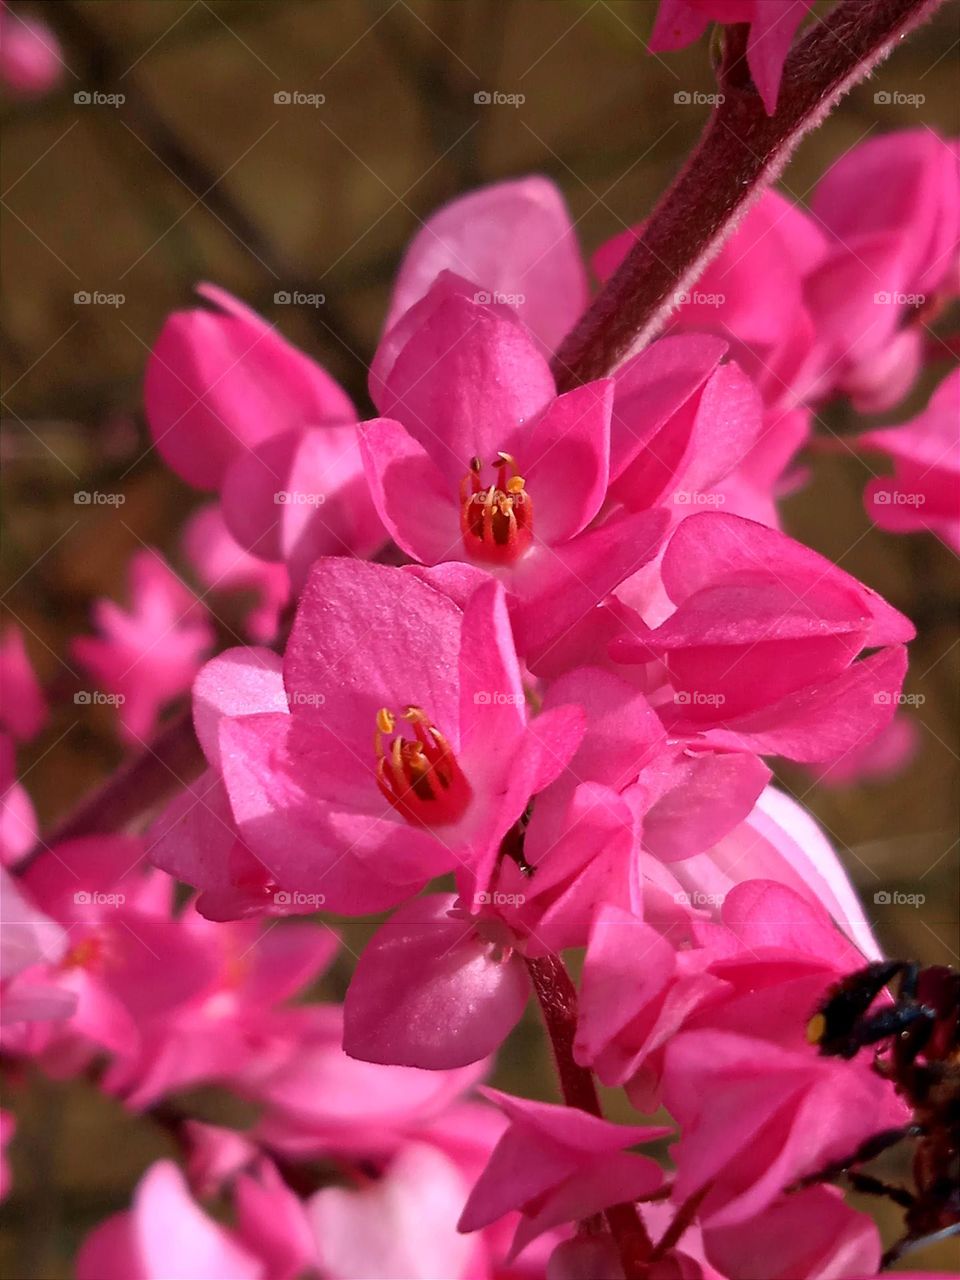 Little pink flowers.